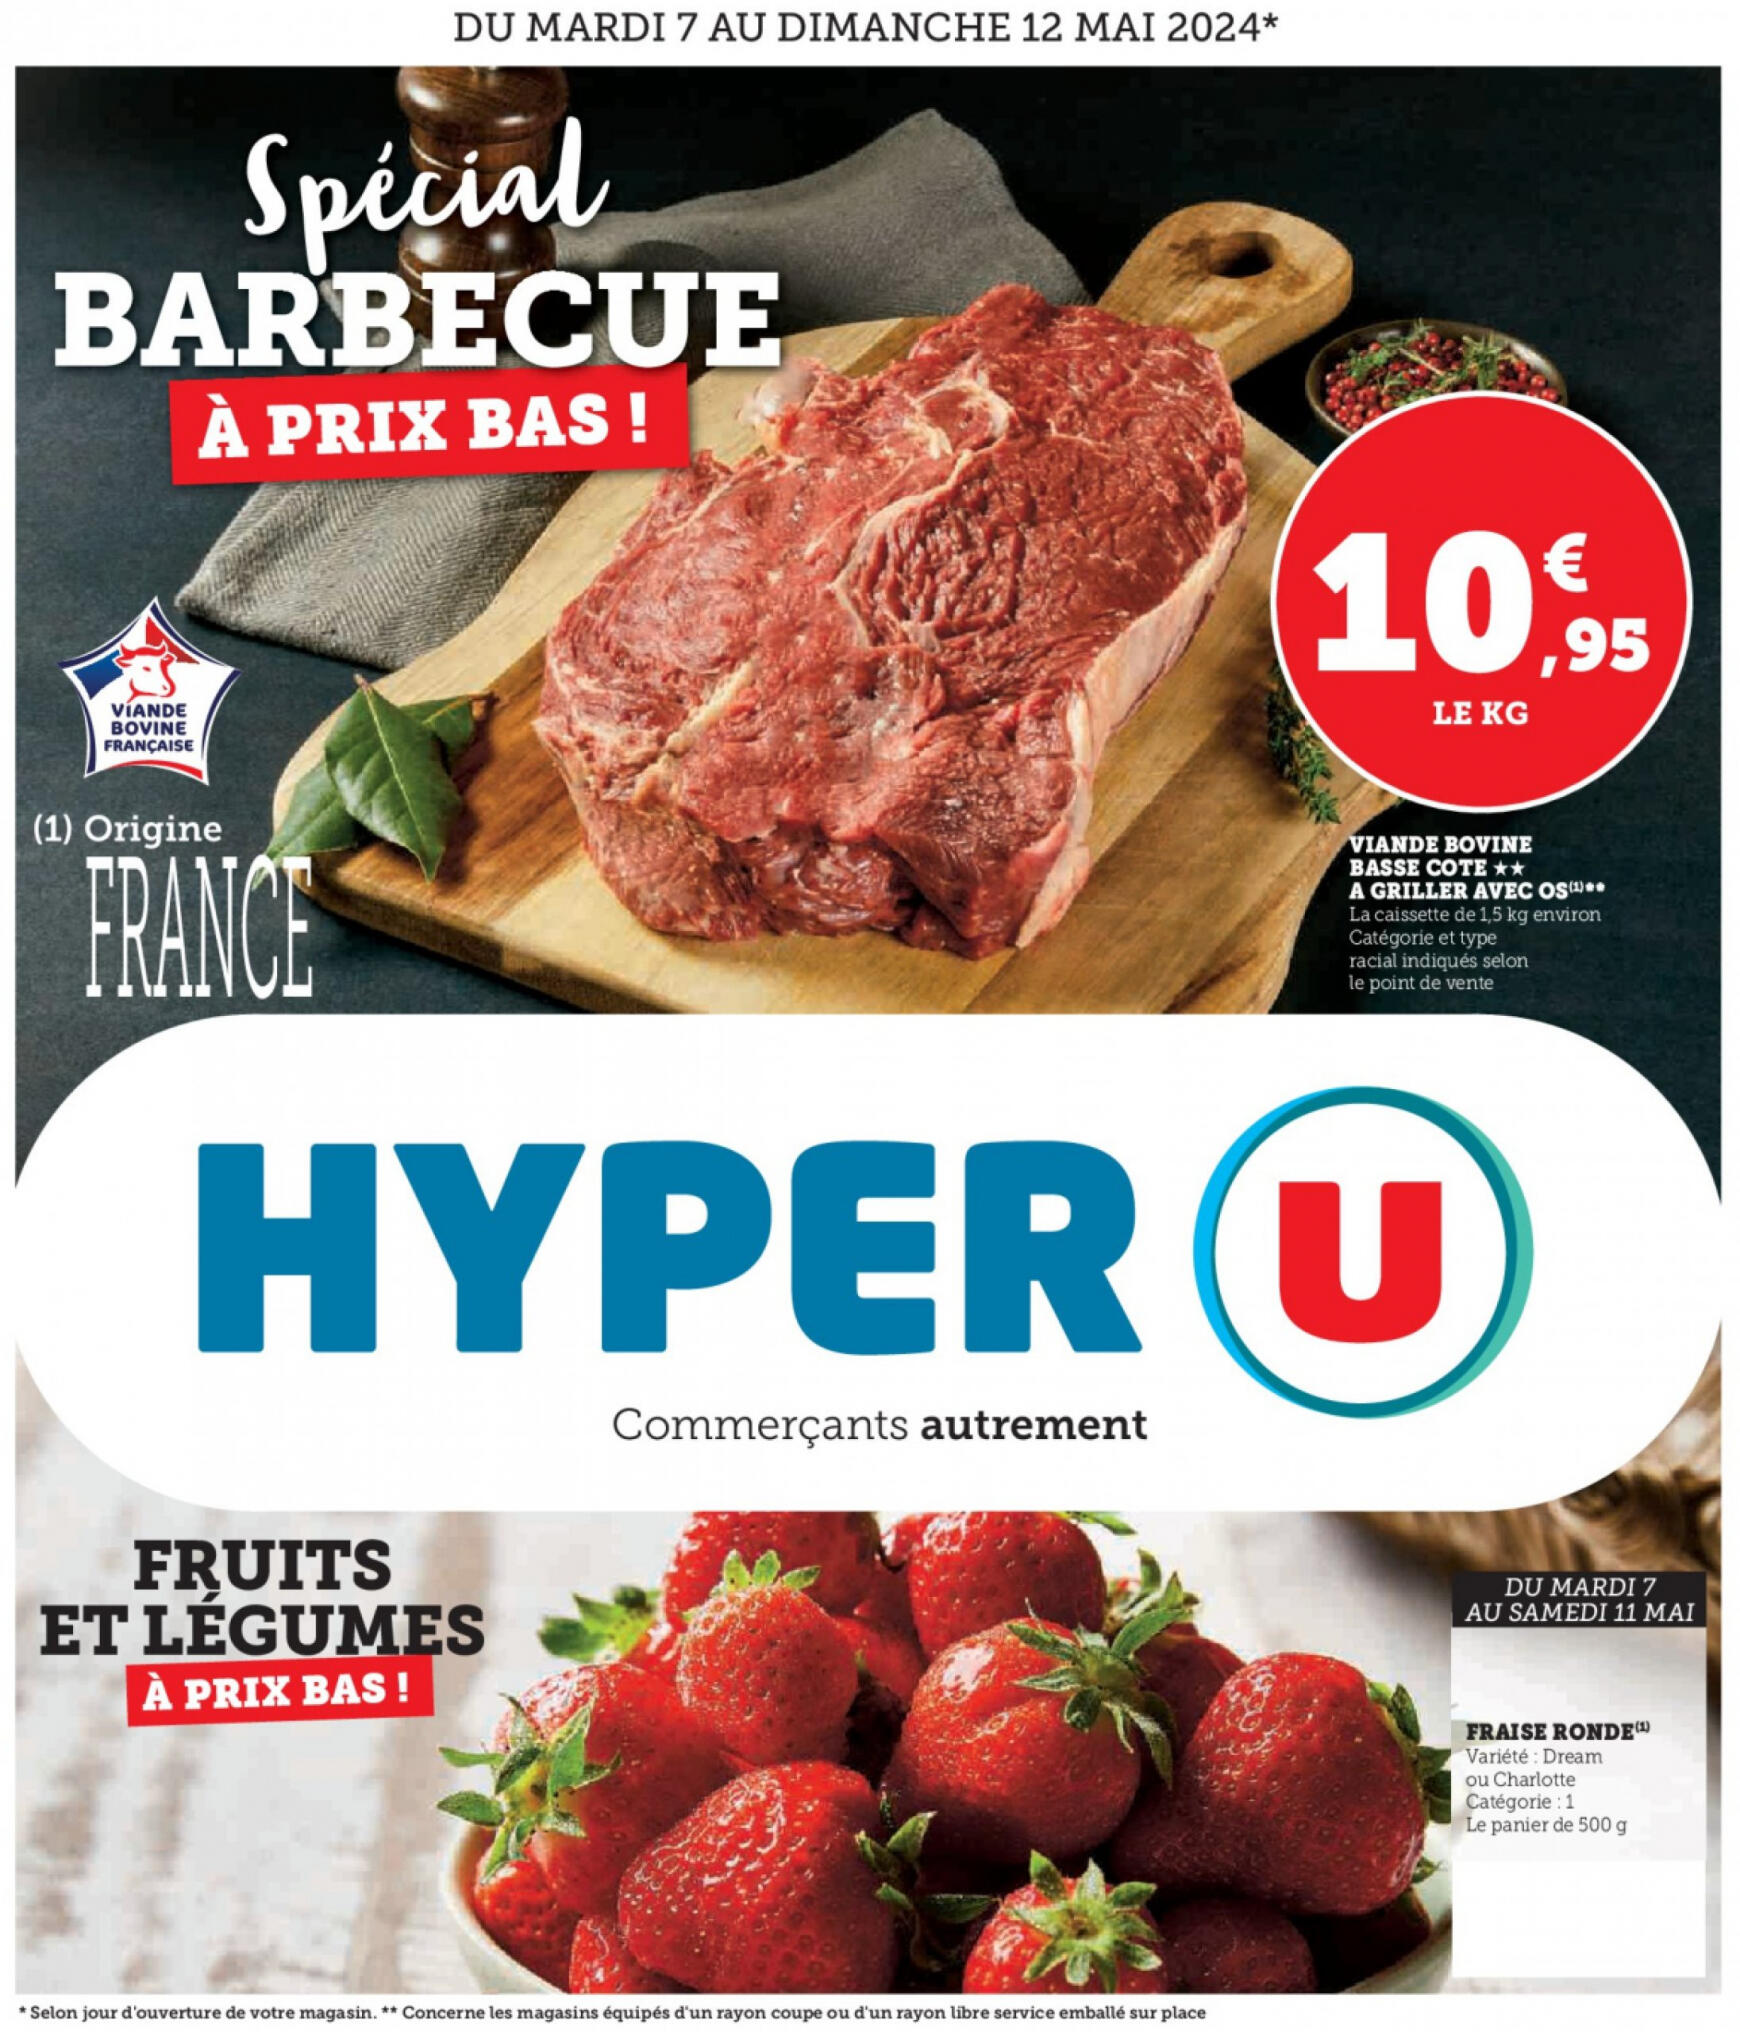 super-u - Prospectus Super U - Spécial barbecue à prix bas actuel 07.05. - 12.05. - page: 1